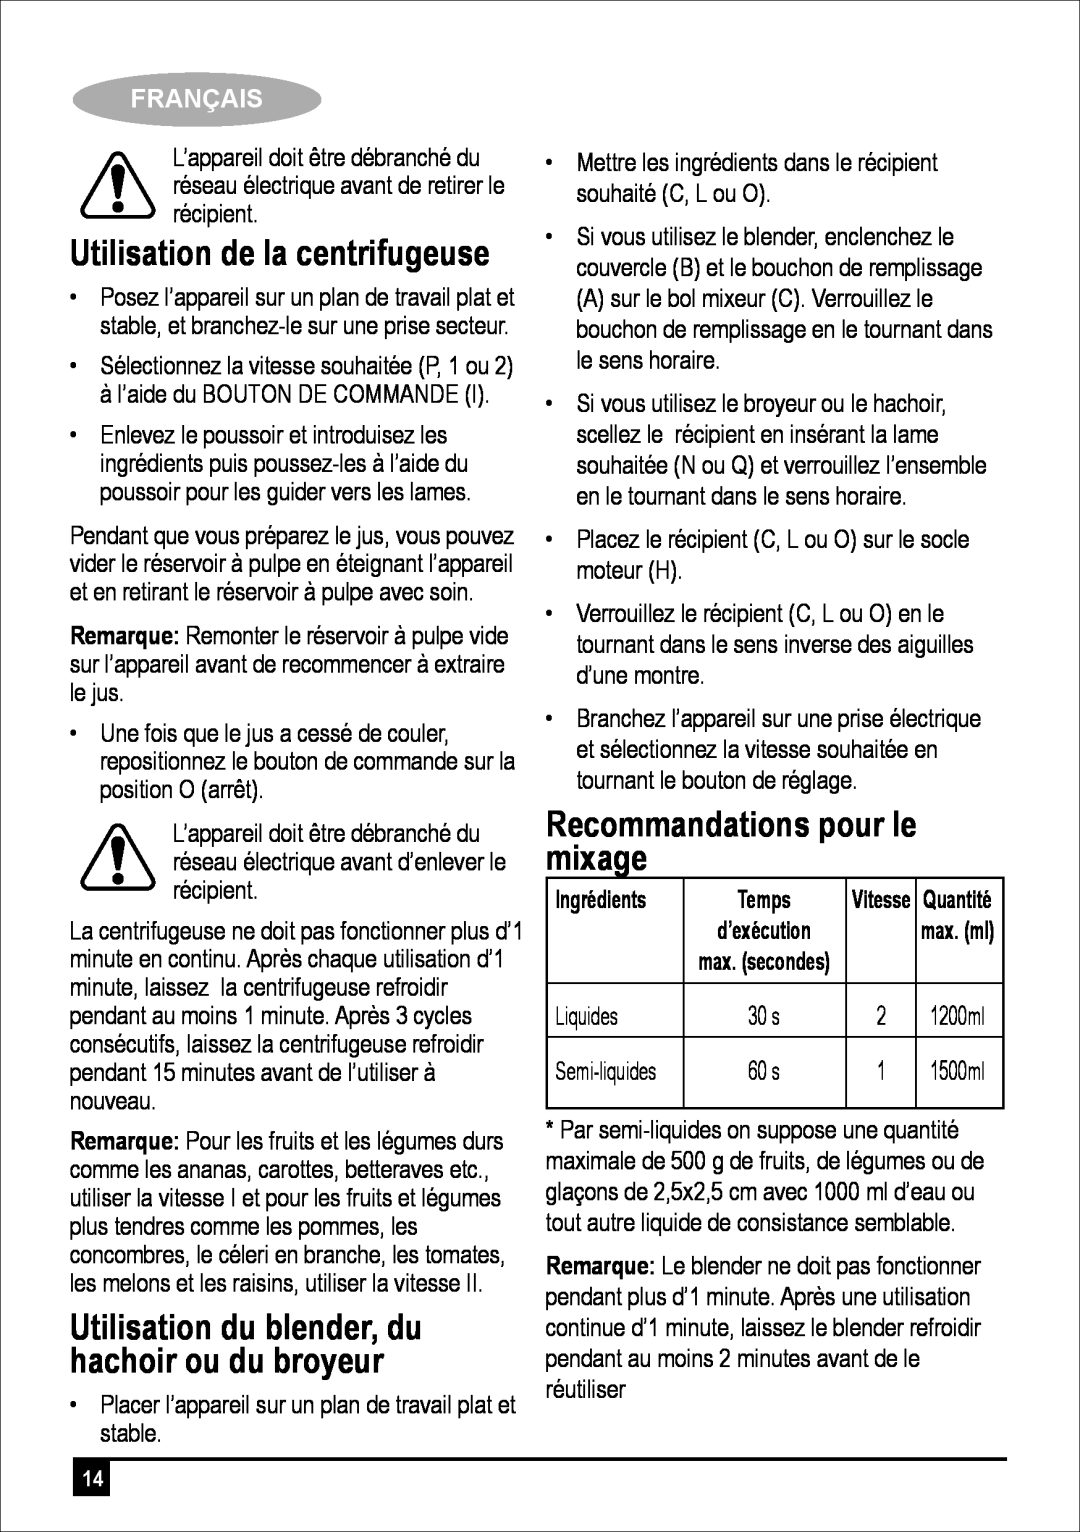 Black & Decker JBGM600-B5 manual Recommandations pour le mixage, Utilisation de la centrifugeuse, Français, Temps 